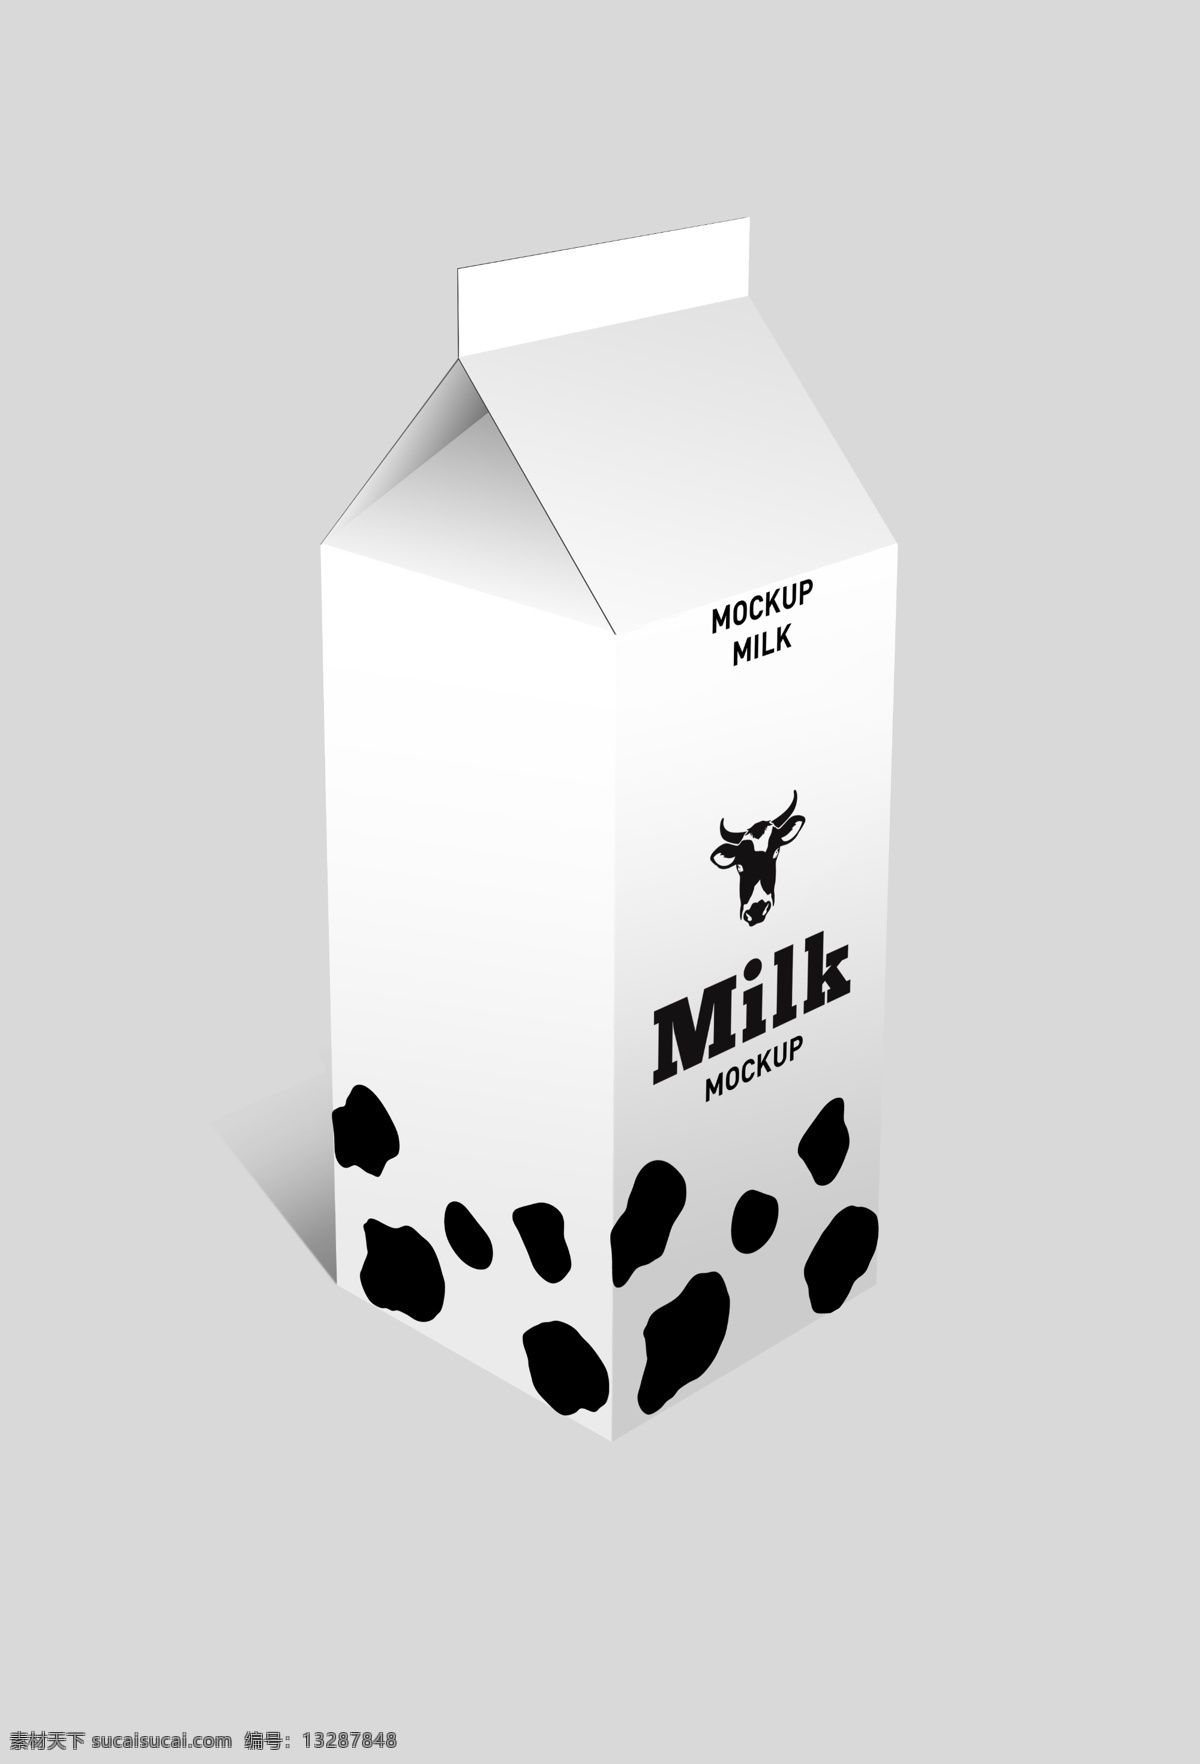 牛奶 包装盒 样机 牛奶包装盒 包装盒样机 牛奶桶装 包装效果图 牛奶包装样机 牛奶包装效果 牛奶包装贴图 饮料包装样机 果汁盒 果汁包装盒 酸奶包装盒 盒子 罐装 vi设计